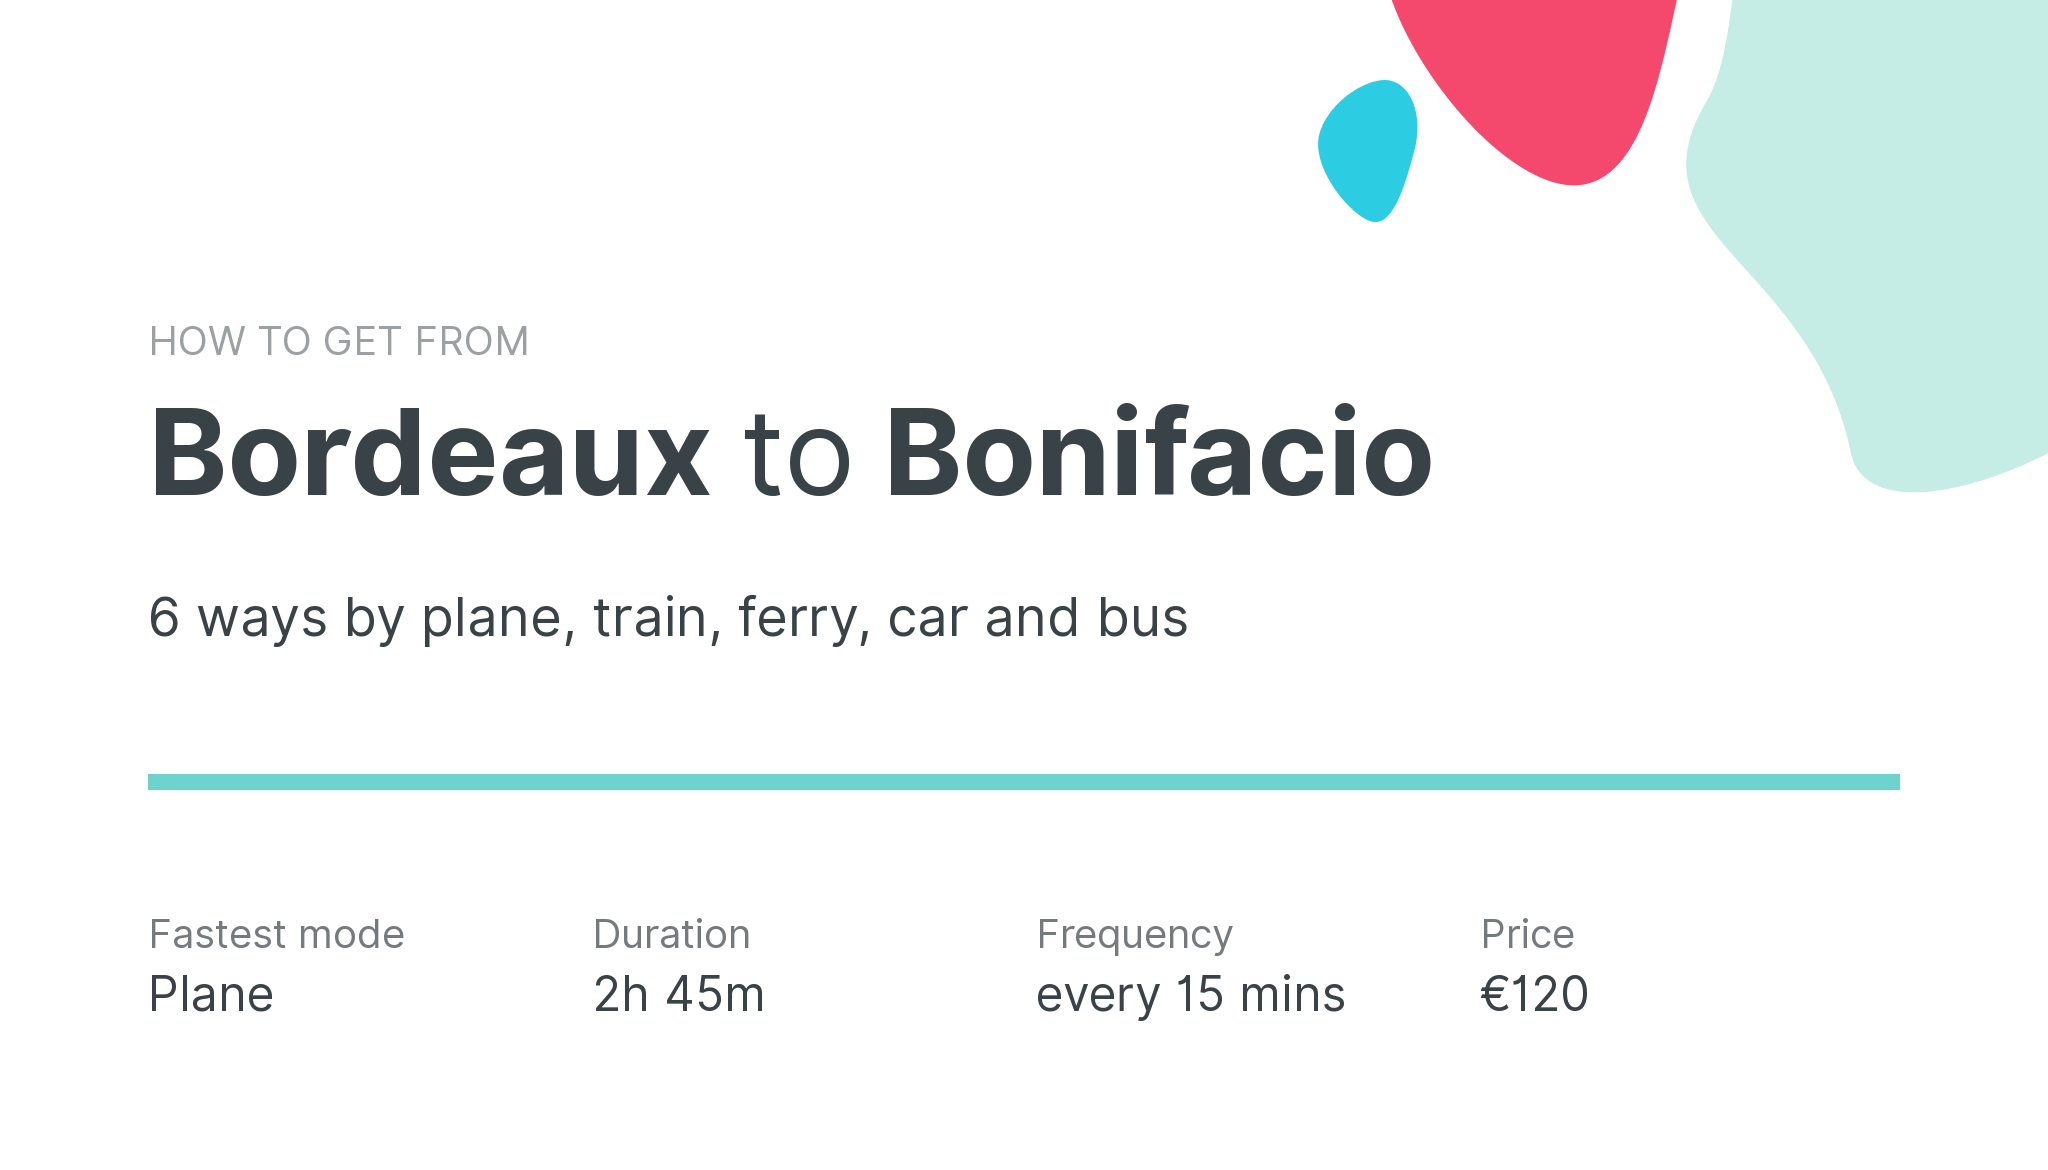 How do I get from Bordeaux to Bonifacio